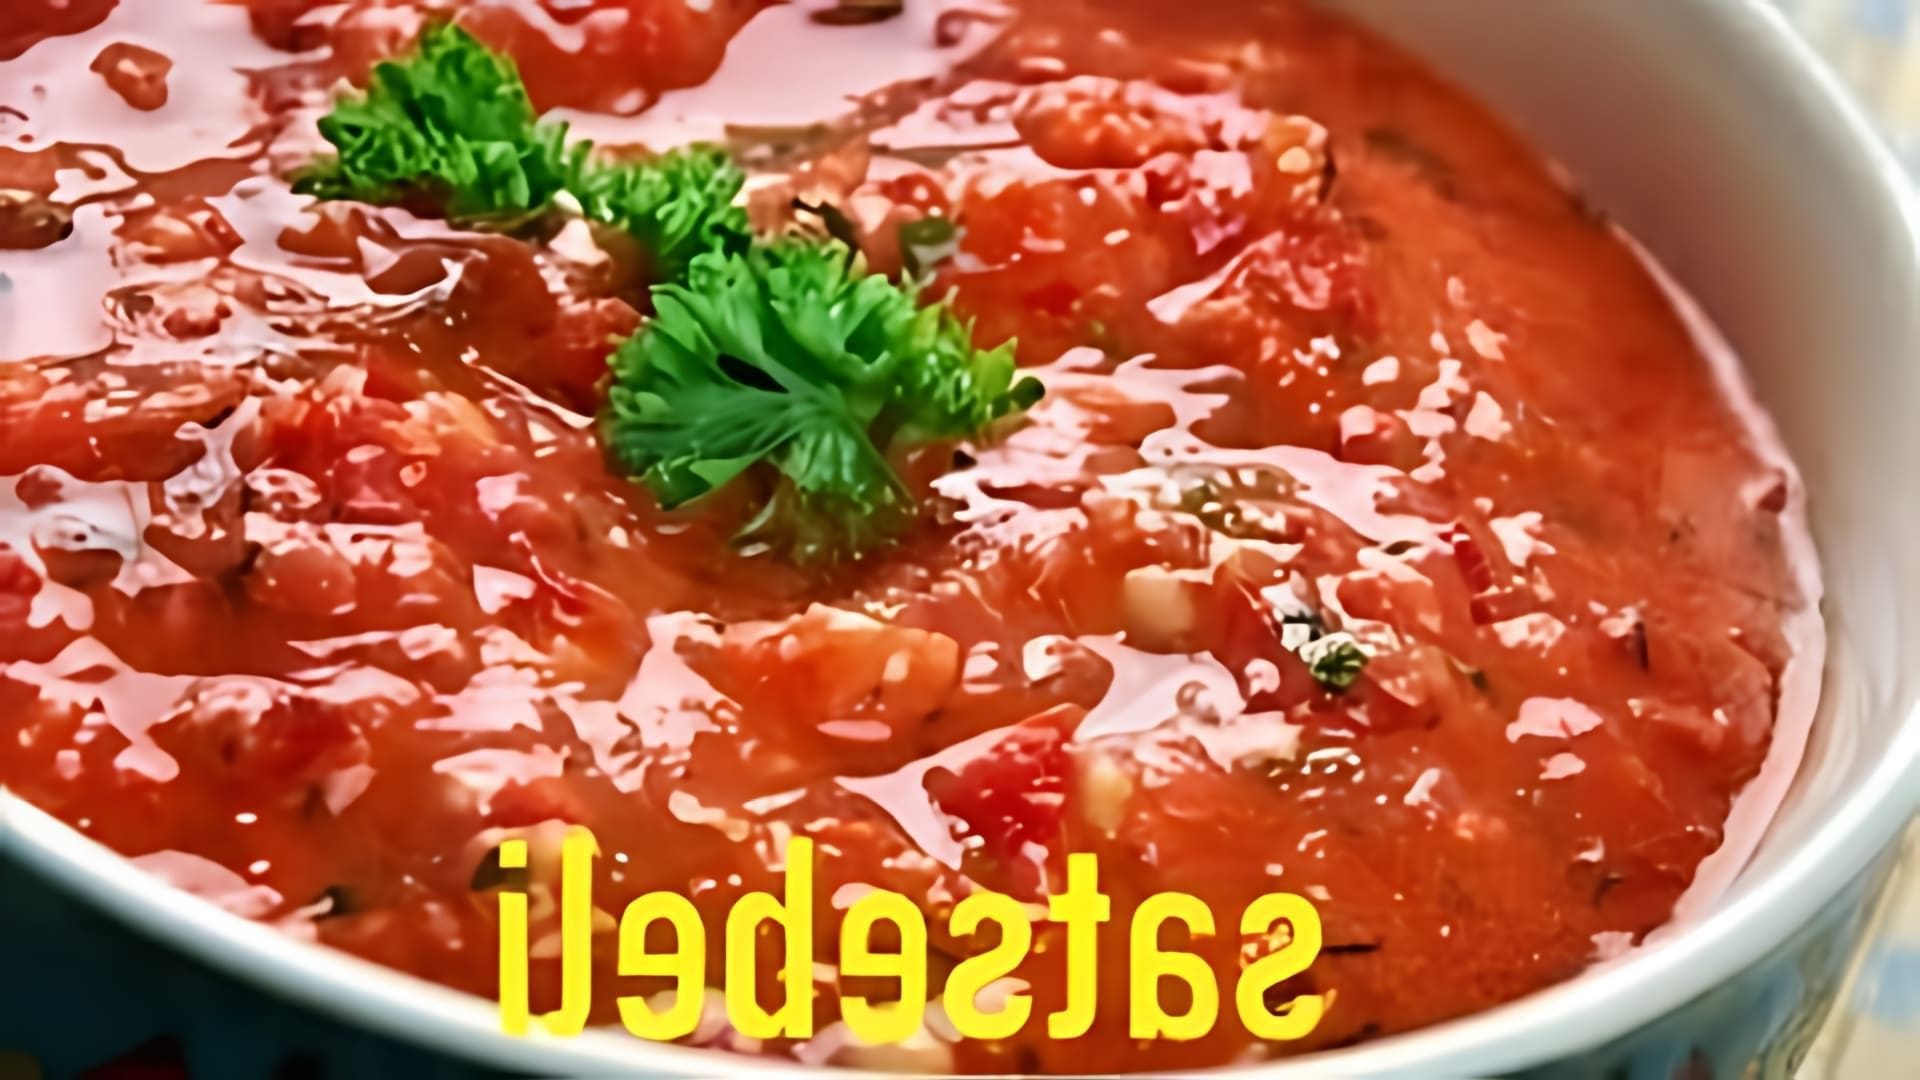 В этом видео демонстрируется процесс приготовления грузинского соуса сацебели